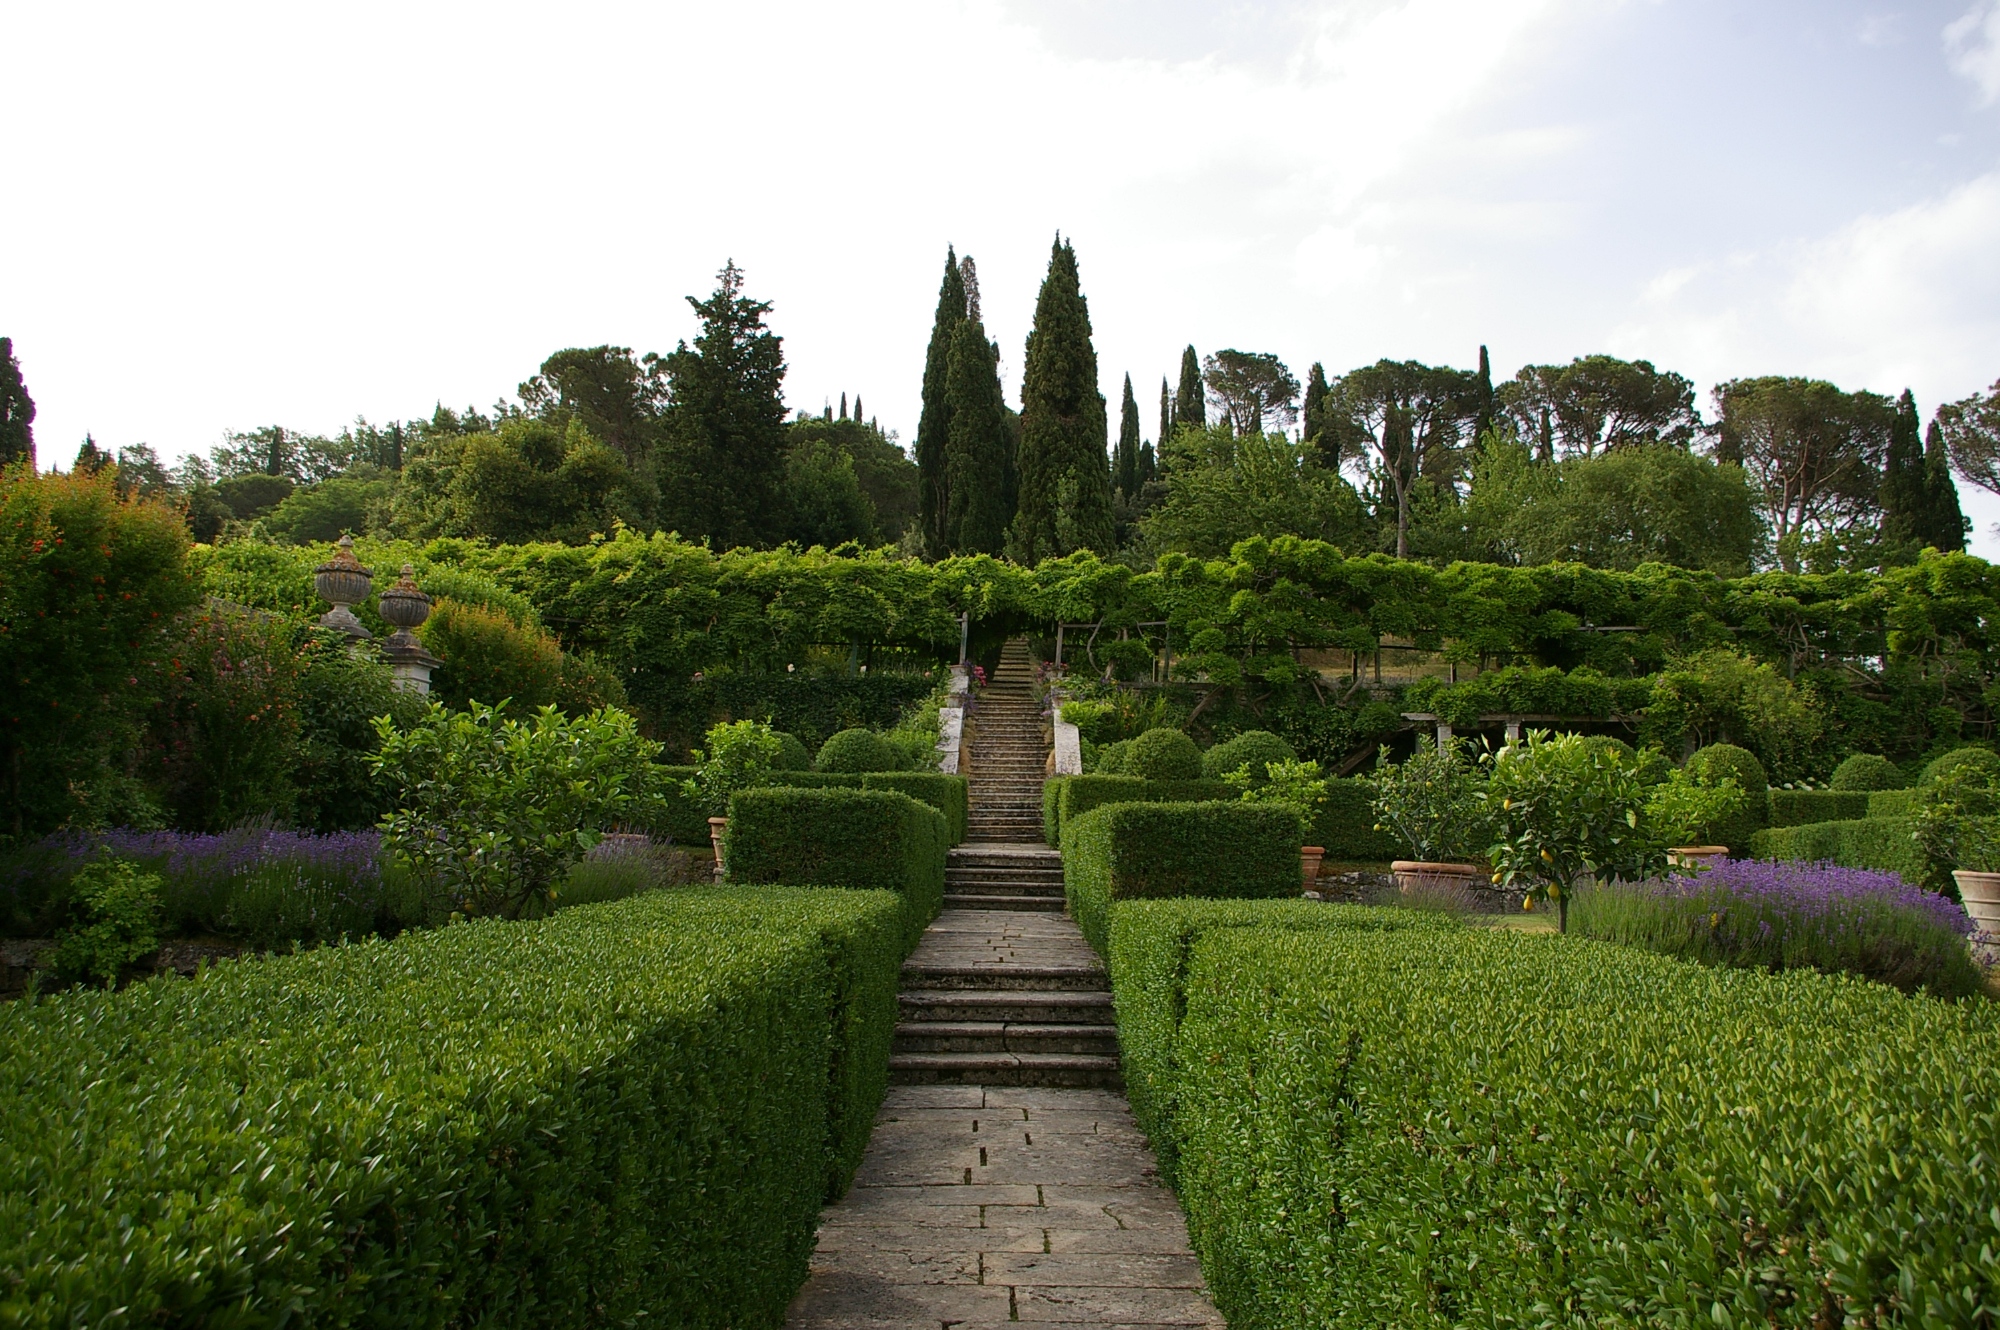 The gardens at Villa La Foce